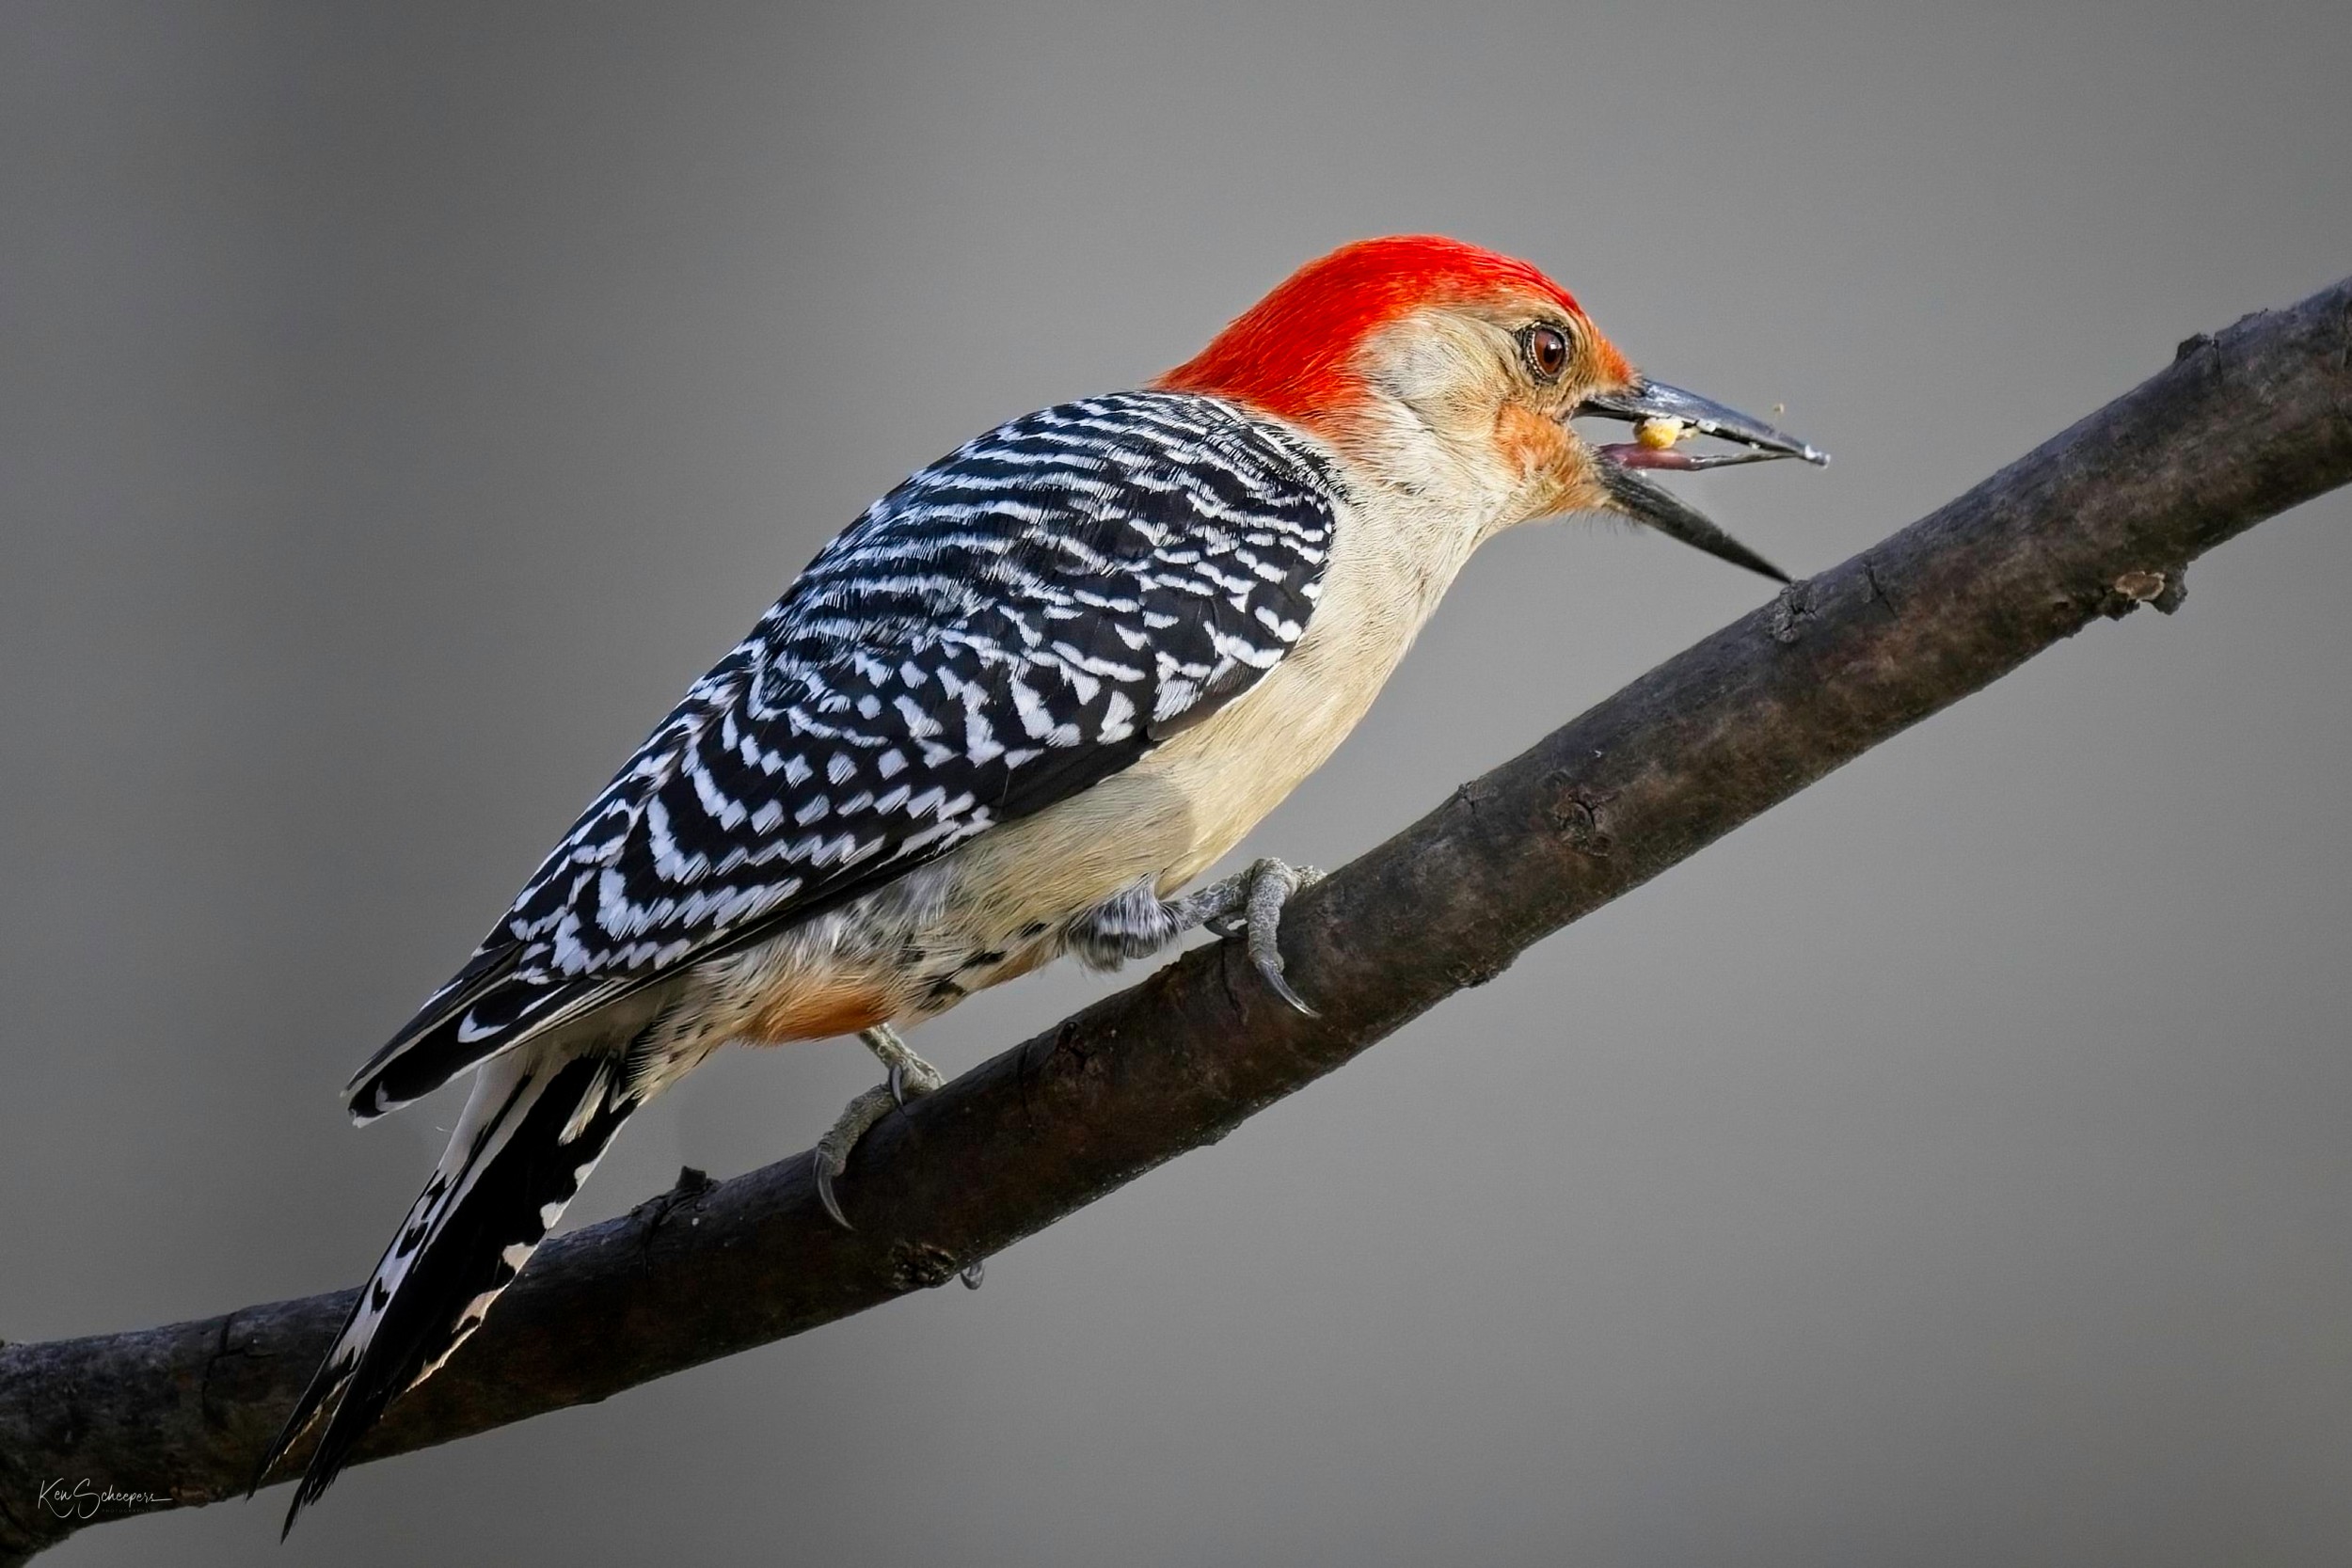 Red-bellied Woodpecker @ 800mm